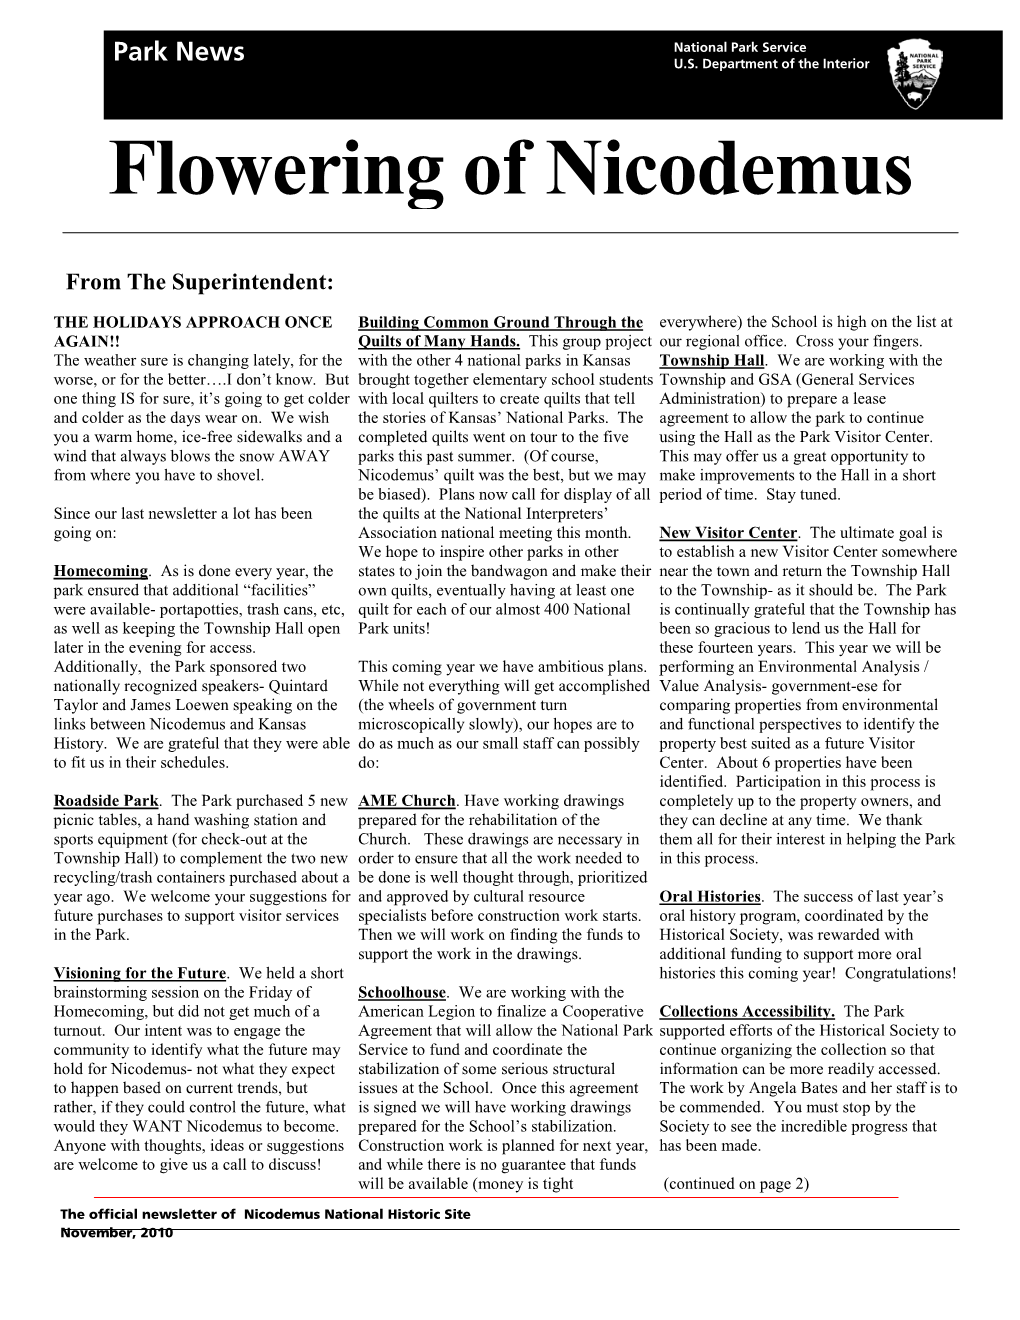 Flowering of Nicodemus